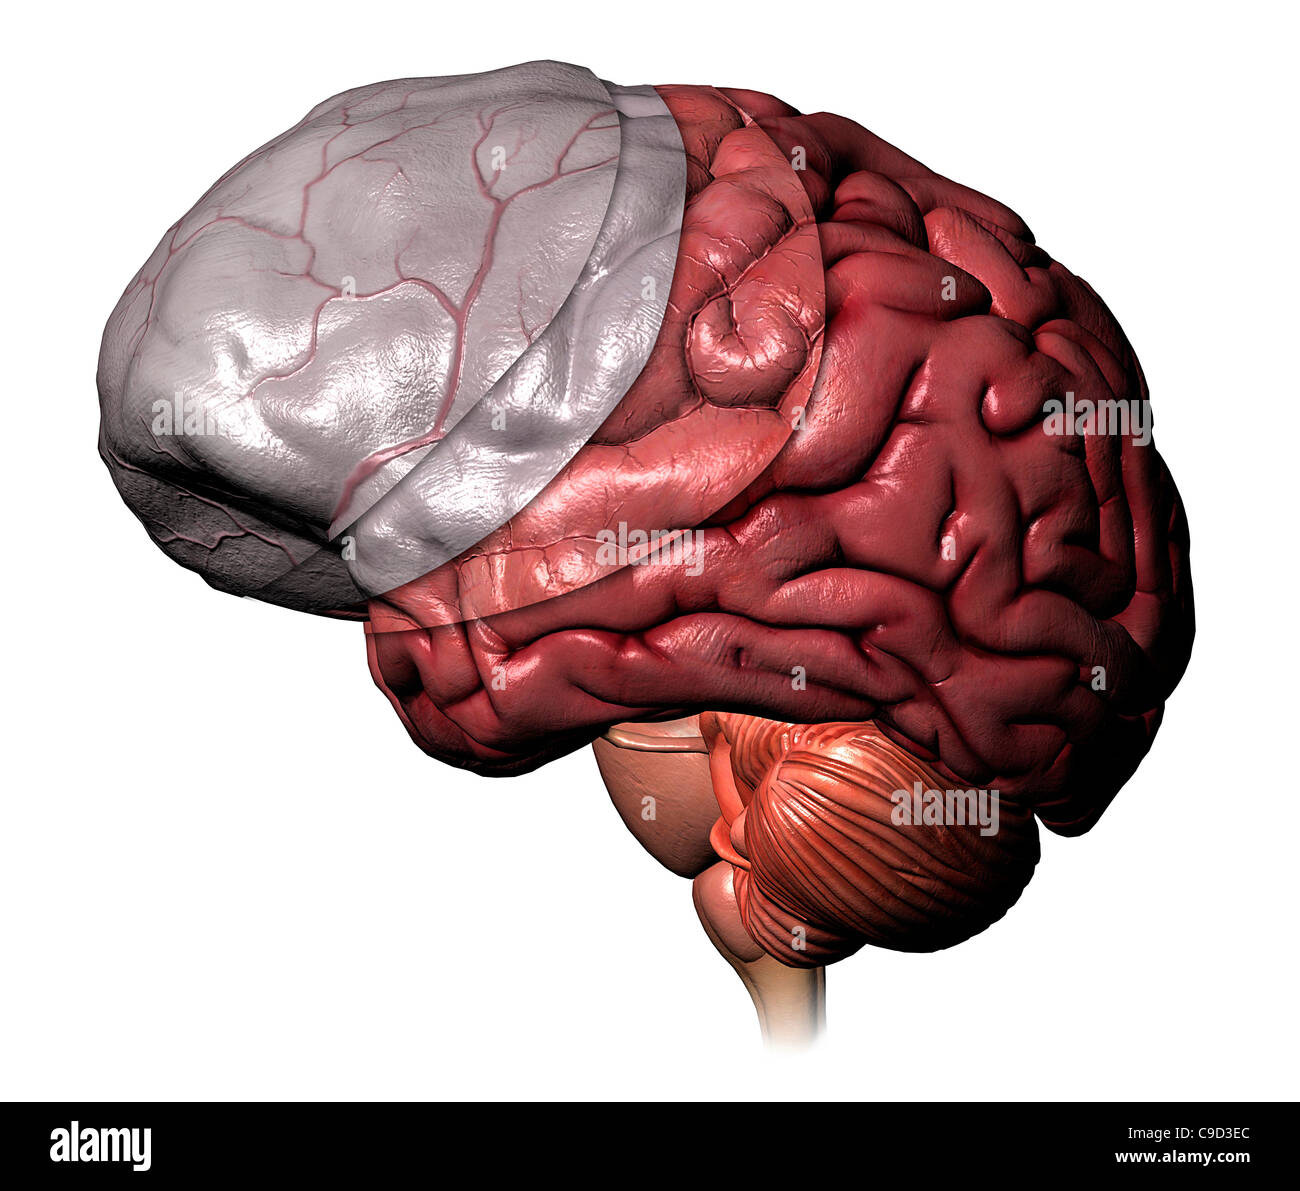 Full Color 3-D medical illustration de couches couvrant le cerveau humain : extra-méninges, dure-mère, l'arachnoïde et couches Banque D'Images